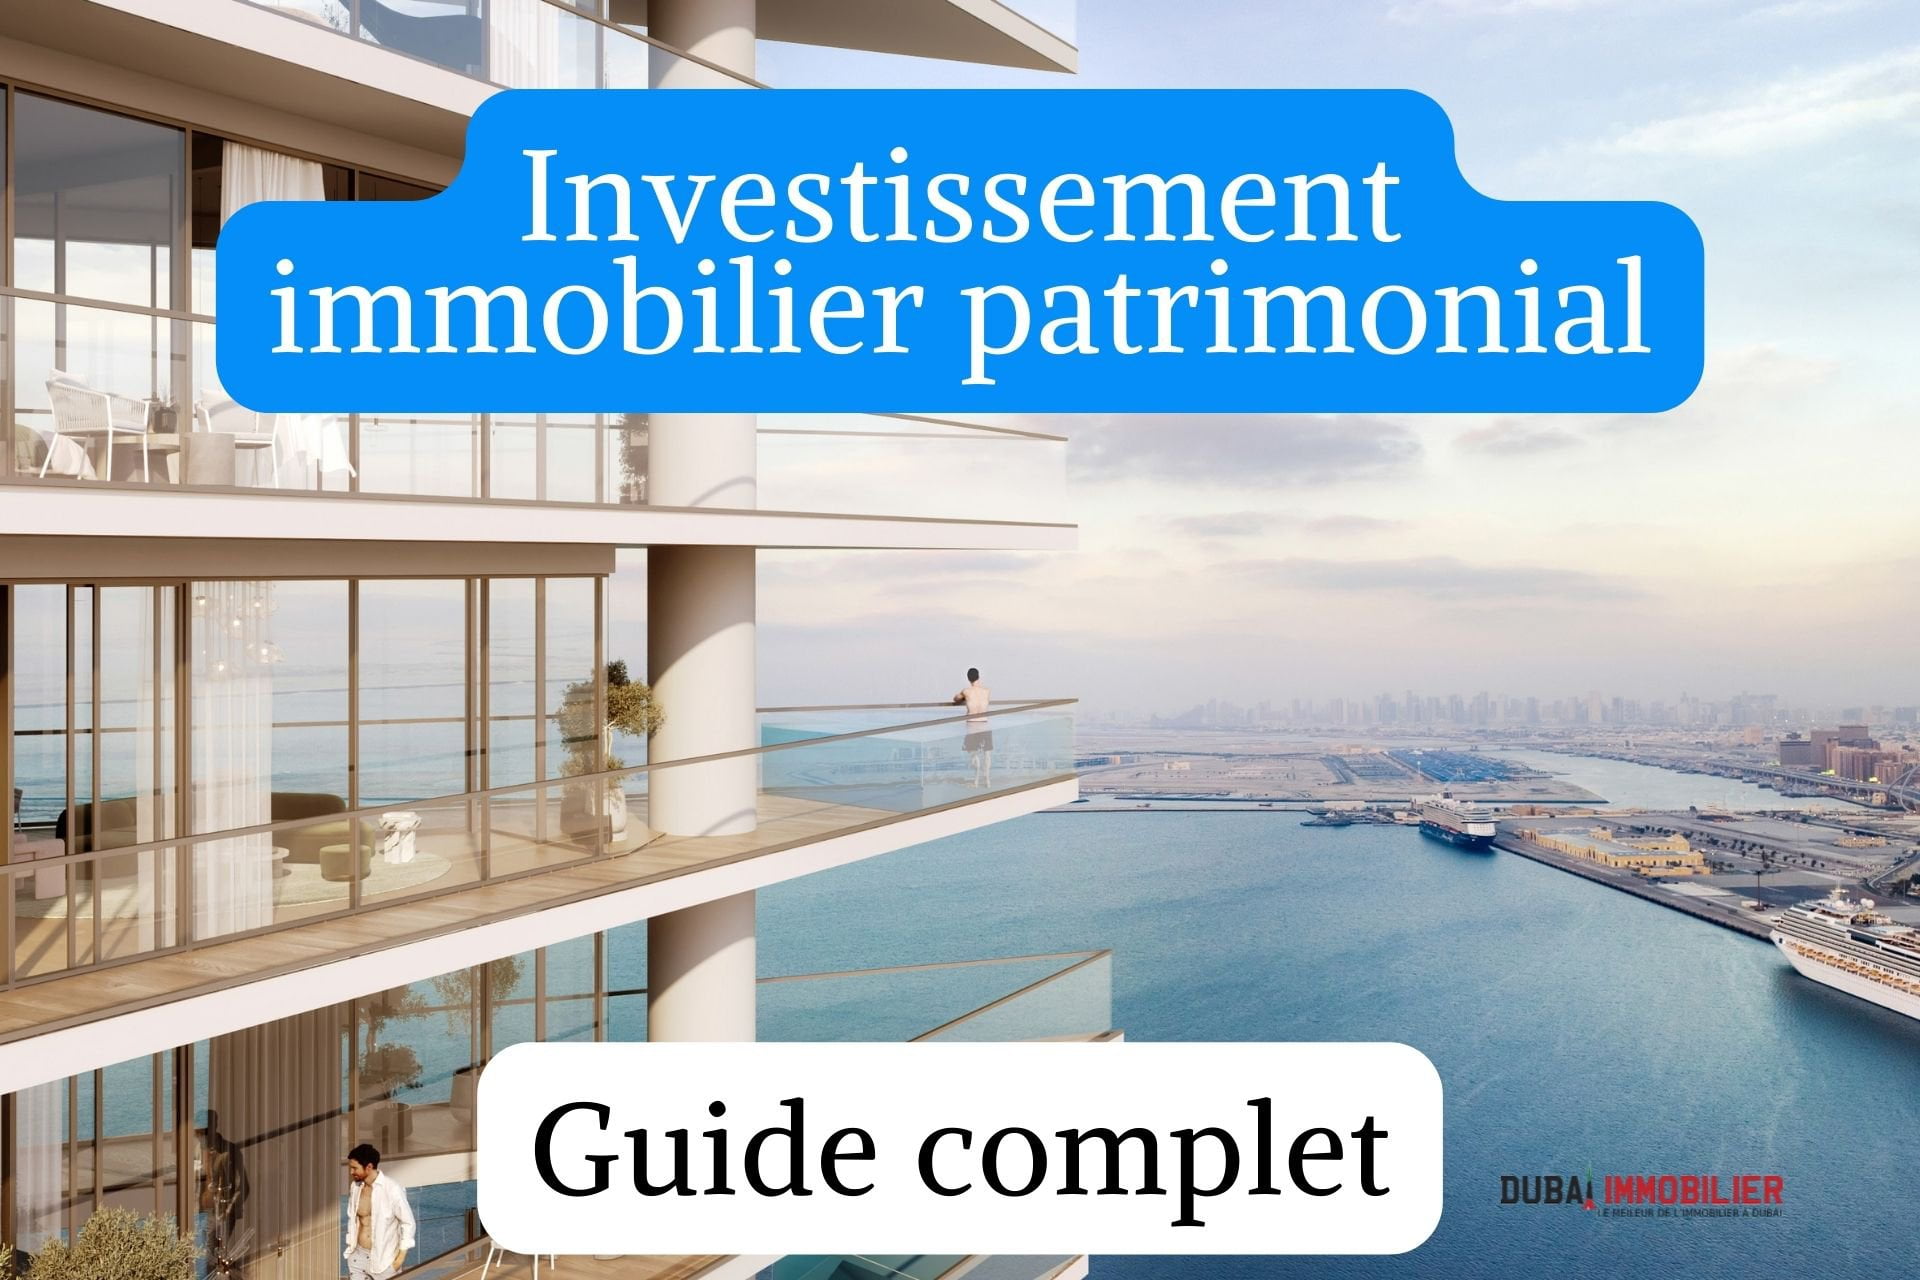 Investissement immobilier patrimonial à Dubaï - Construisez et diversifiez votre patrimoine